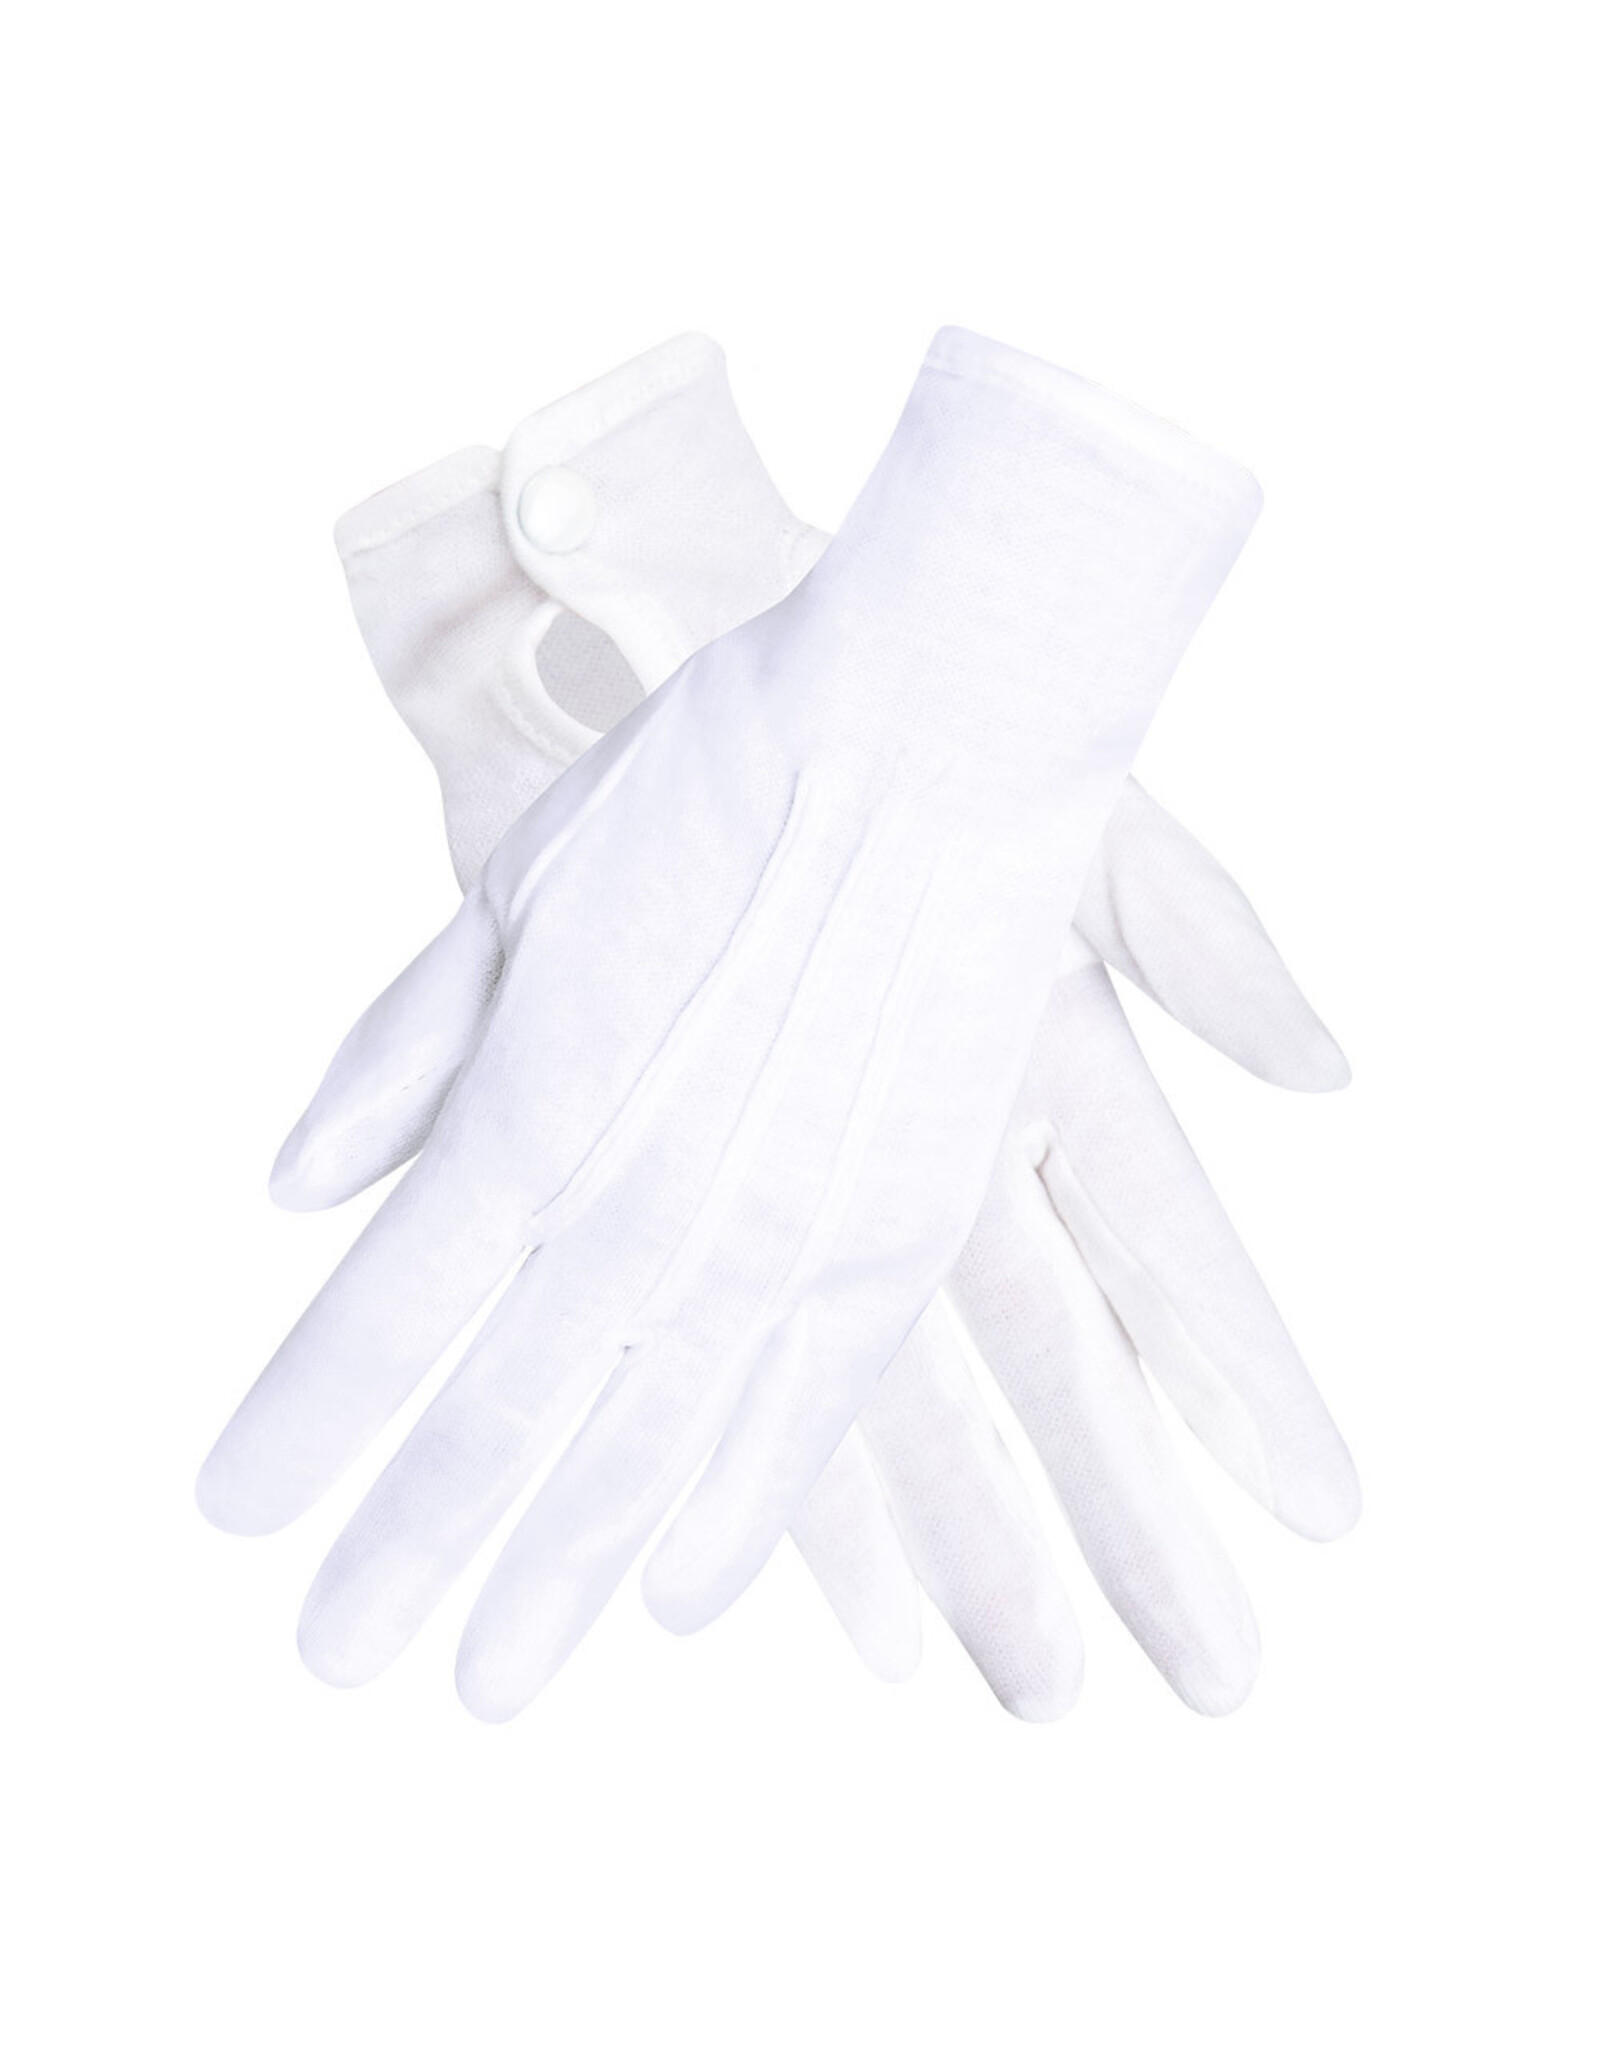 Boland handschoenen basic wit met drukknoop XL